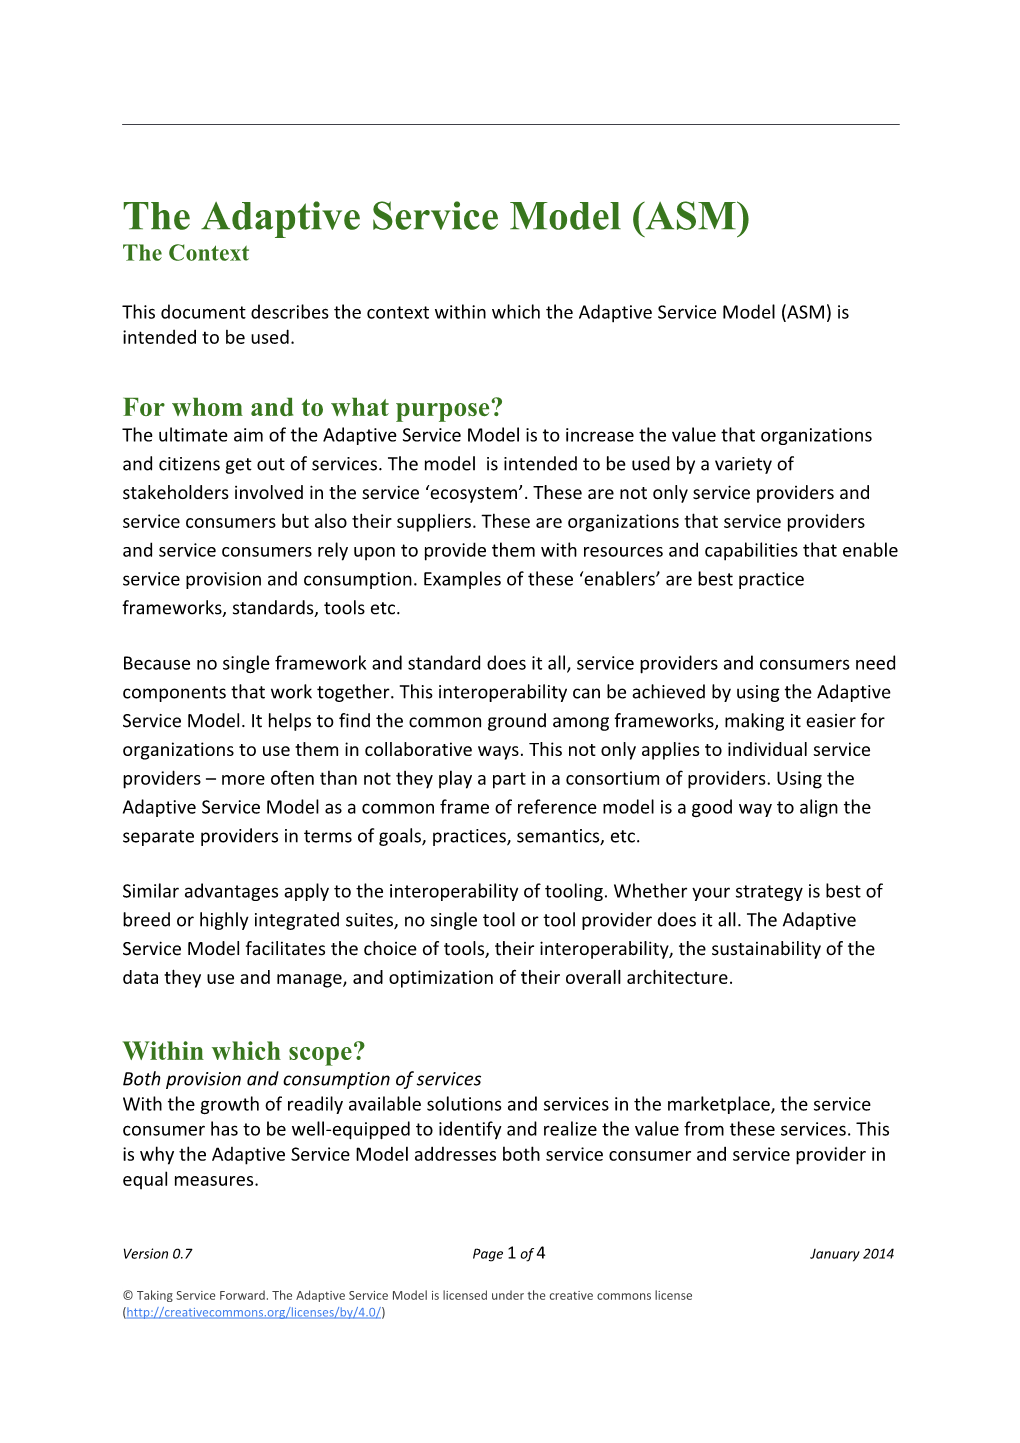 Adaptive Service Model - the Context V0.7